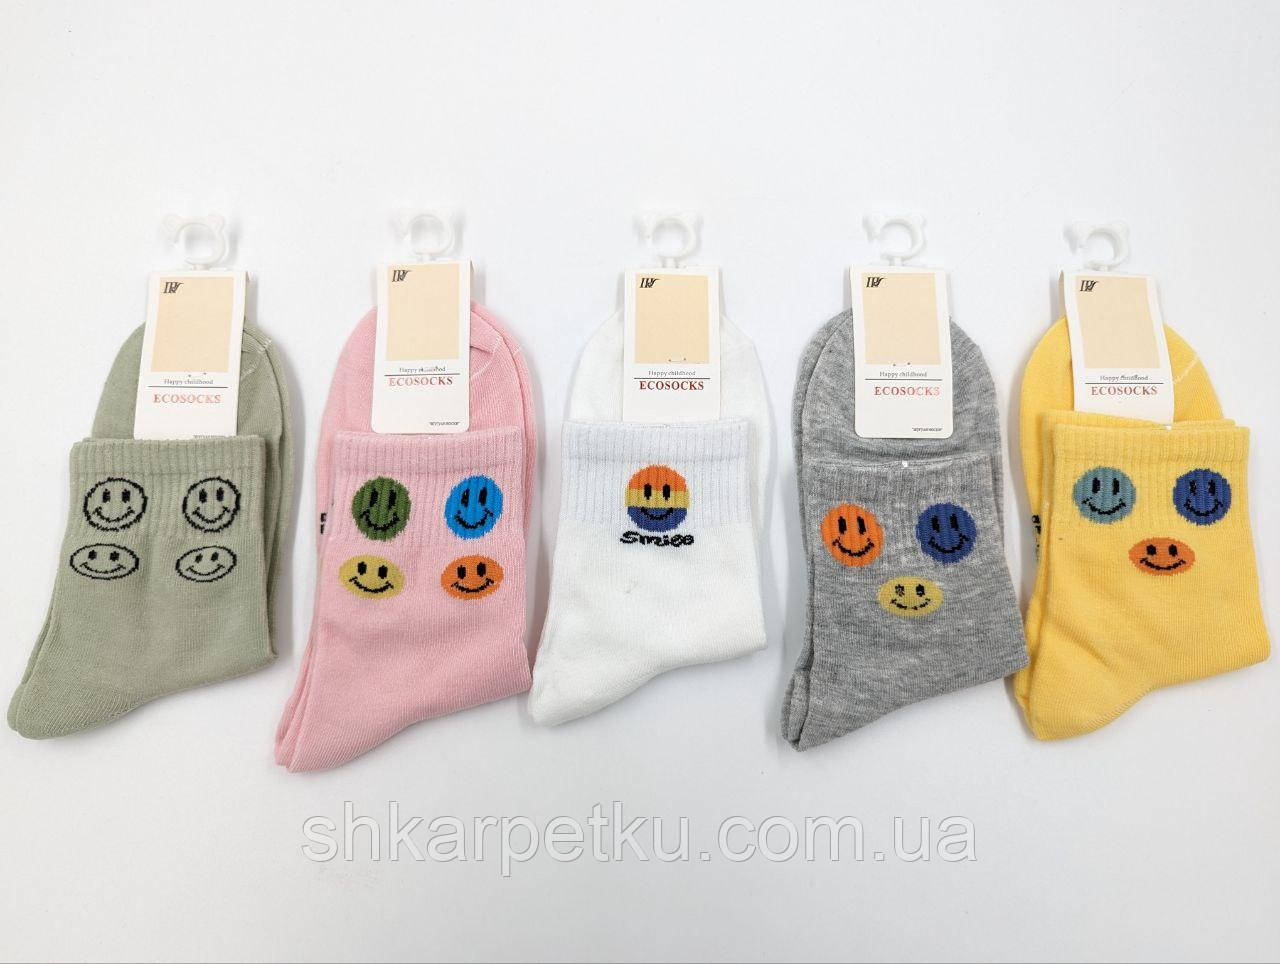 Жіночі демісезонні шкарпетки Ecosocks смайлик, бавовна, розмір 36-41, 10 пар/уп асорті кольорів